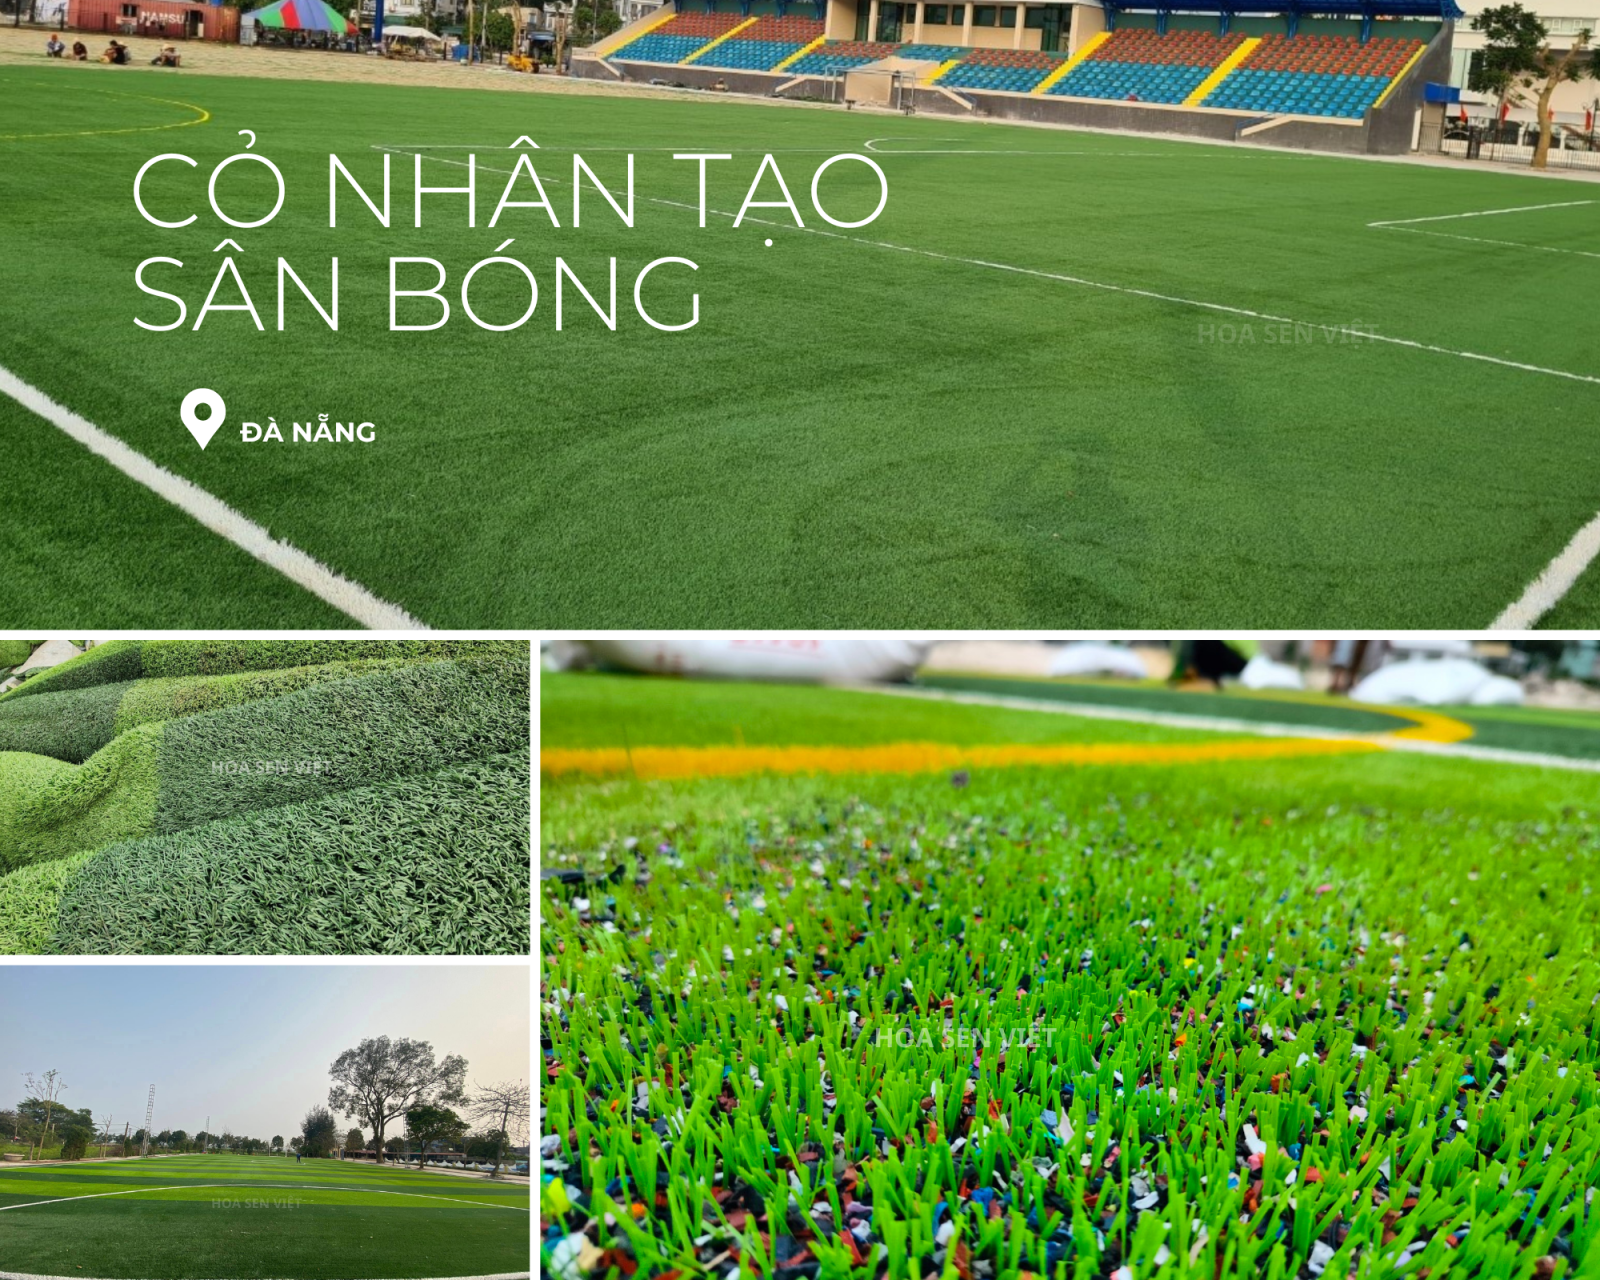 Thảm cỏ nhân tạo sân bóng Hội An